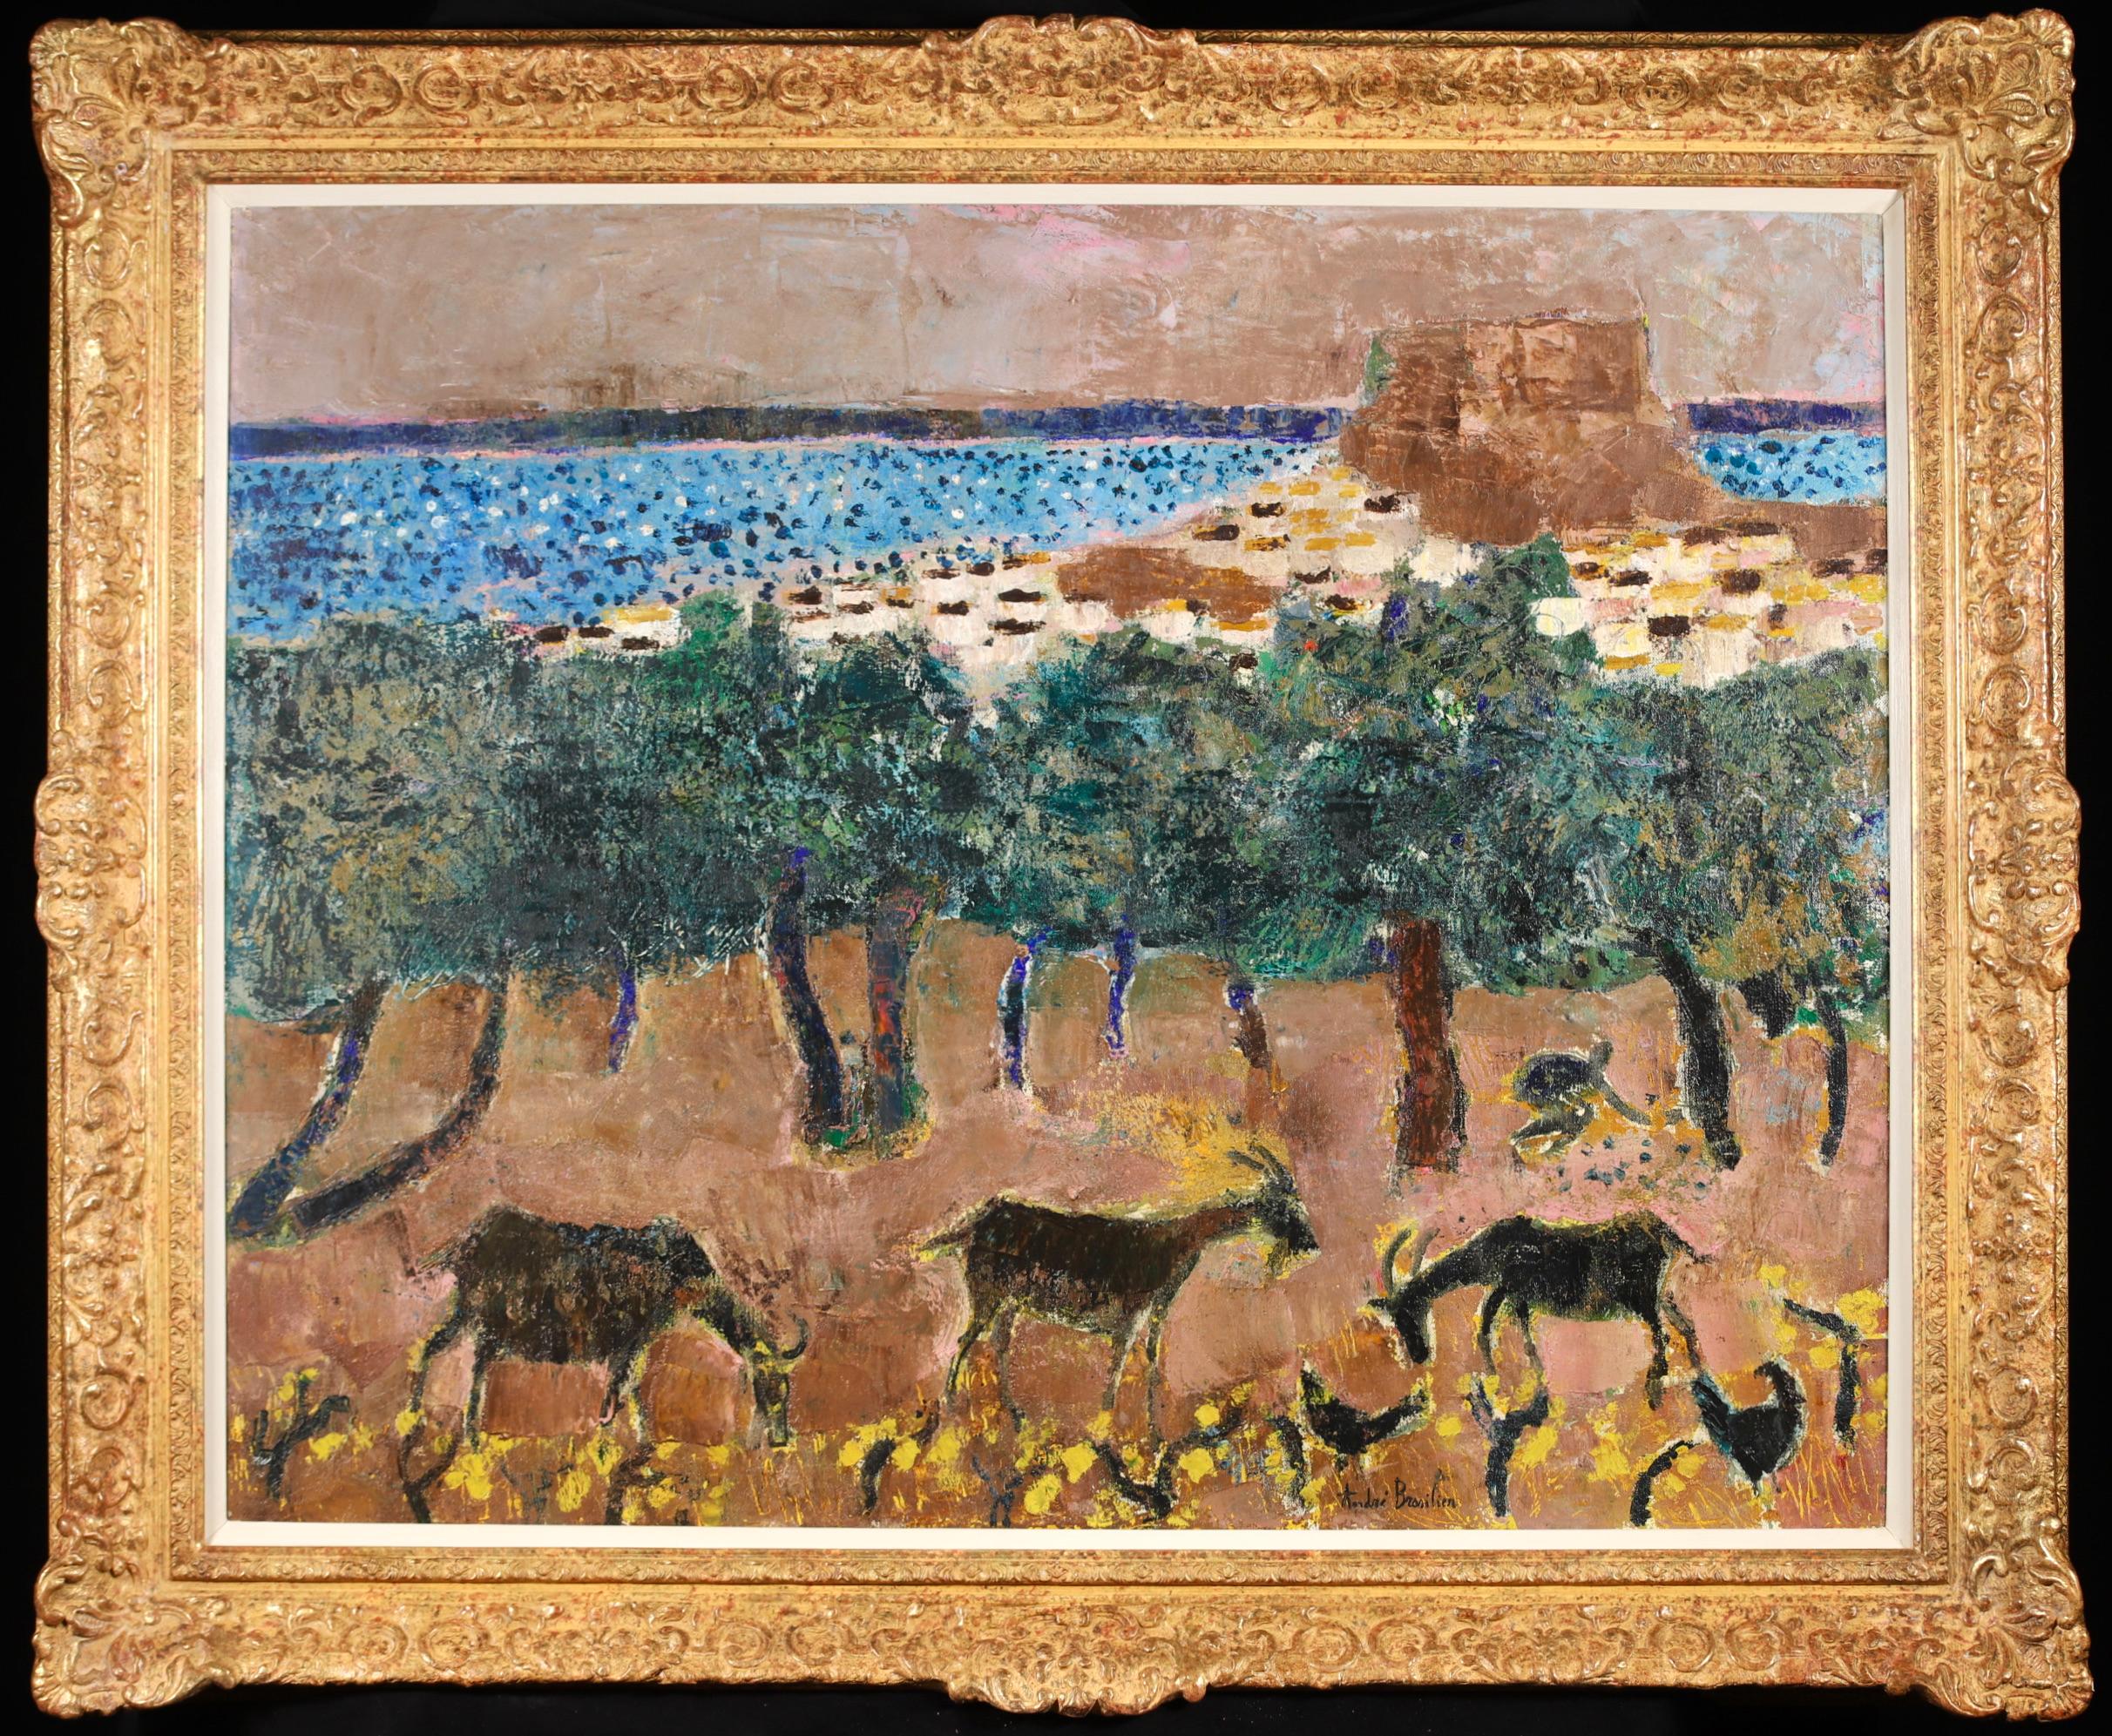 Signiert Öl auf Leinwand Tiere in der Landschaft von Französisch expressionistischen Maler Andre Brasilier. Das Werk zeigt Ziegen und Vögel vor grünen Bäumen mit einem blauen Meer dahinter. Dieses frühe Werk malte Brasilier während eines Malurlaubs